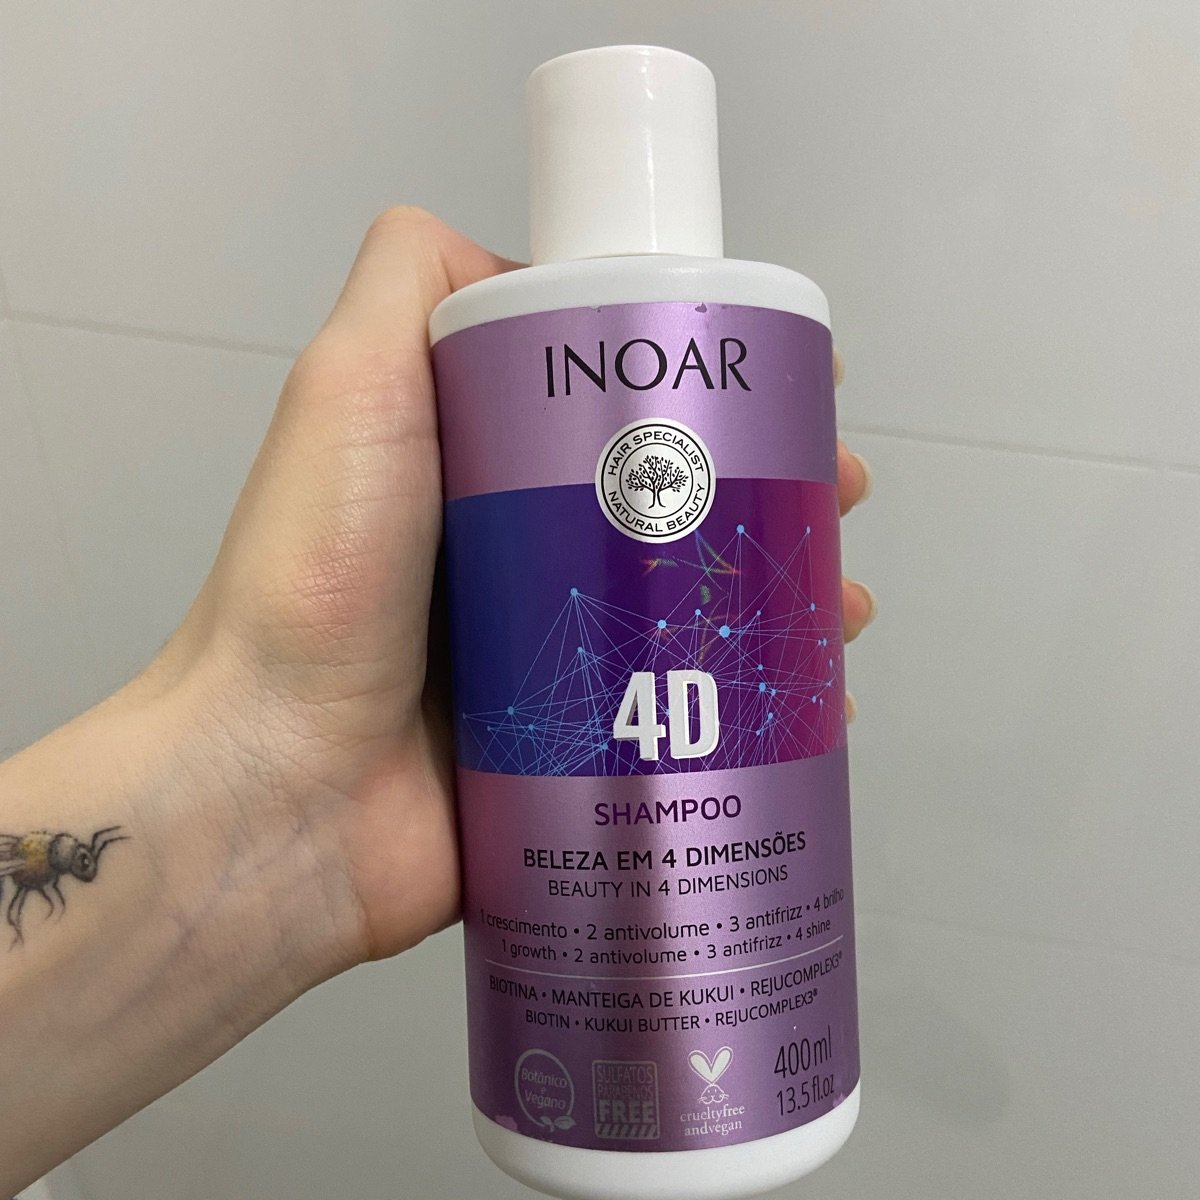 Inoar Shampoo 4D - beleza em 4 dimensões Reviews | abillion